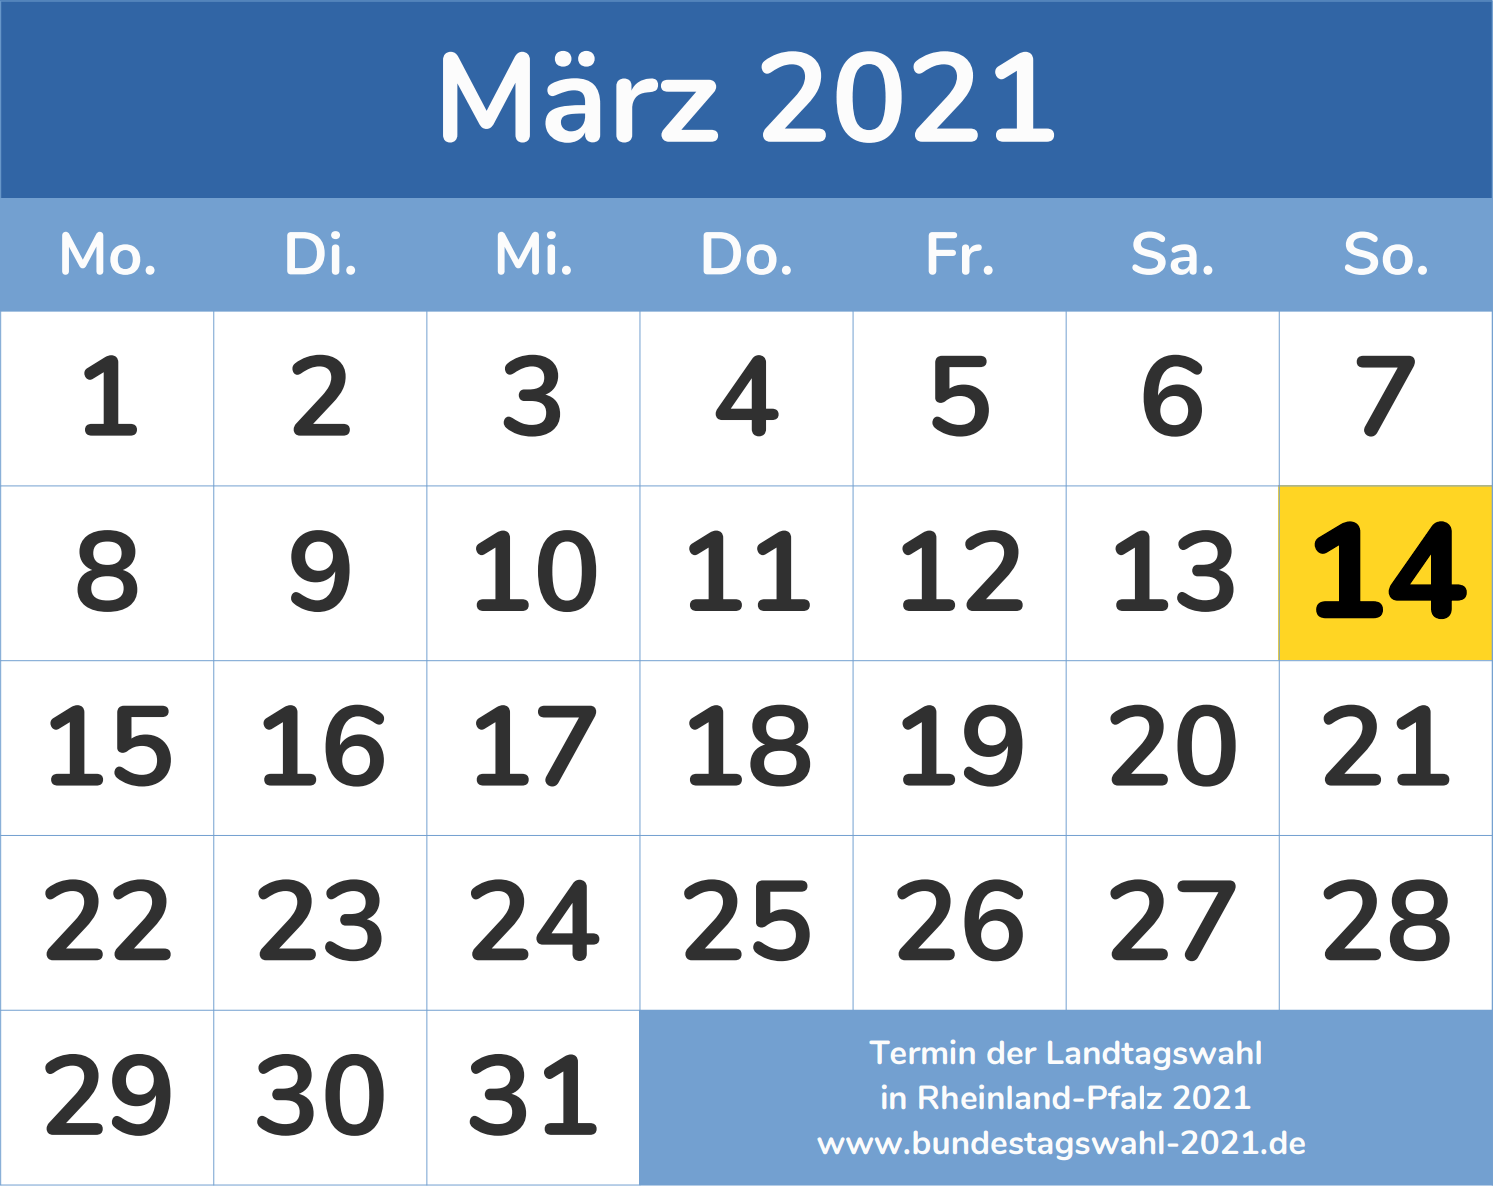 Wahltermin für die Landtagswahl 2021 in Rheinland-Pfalz